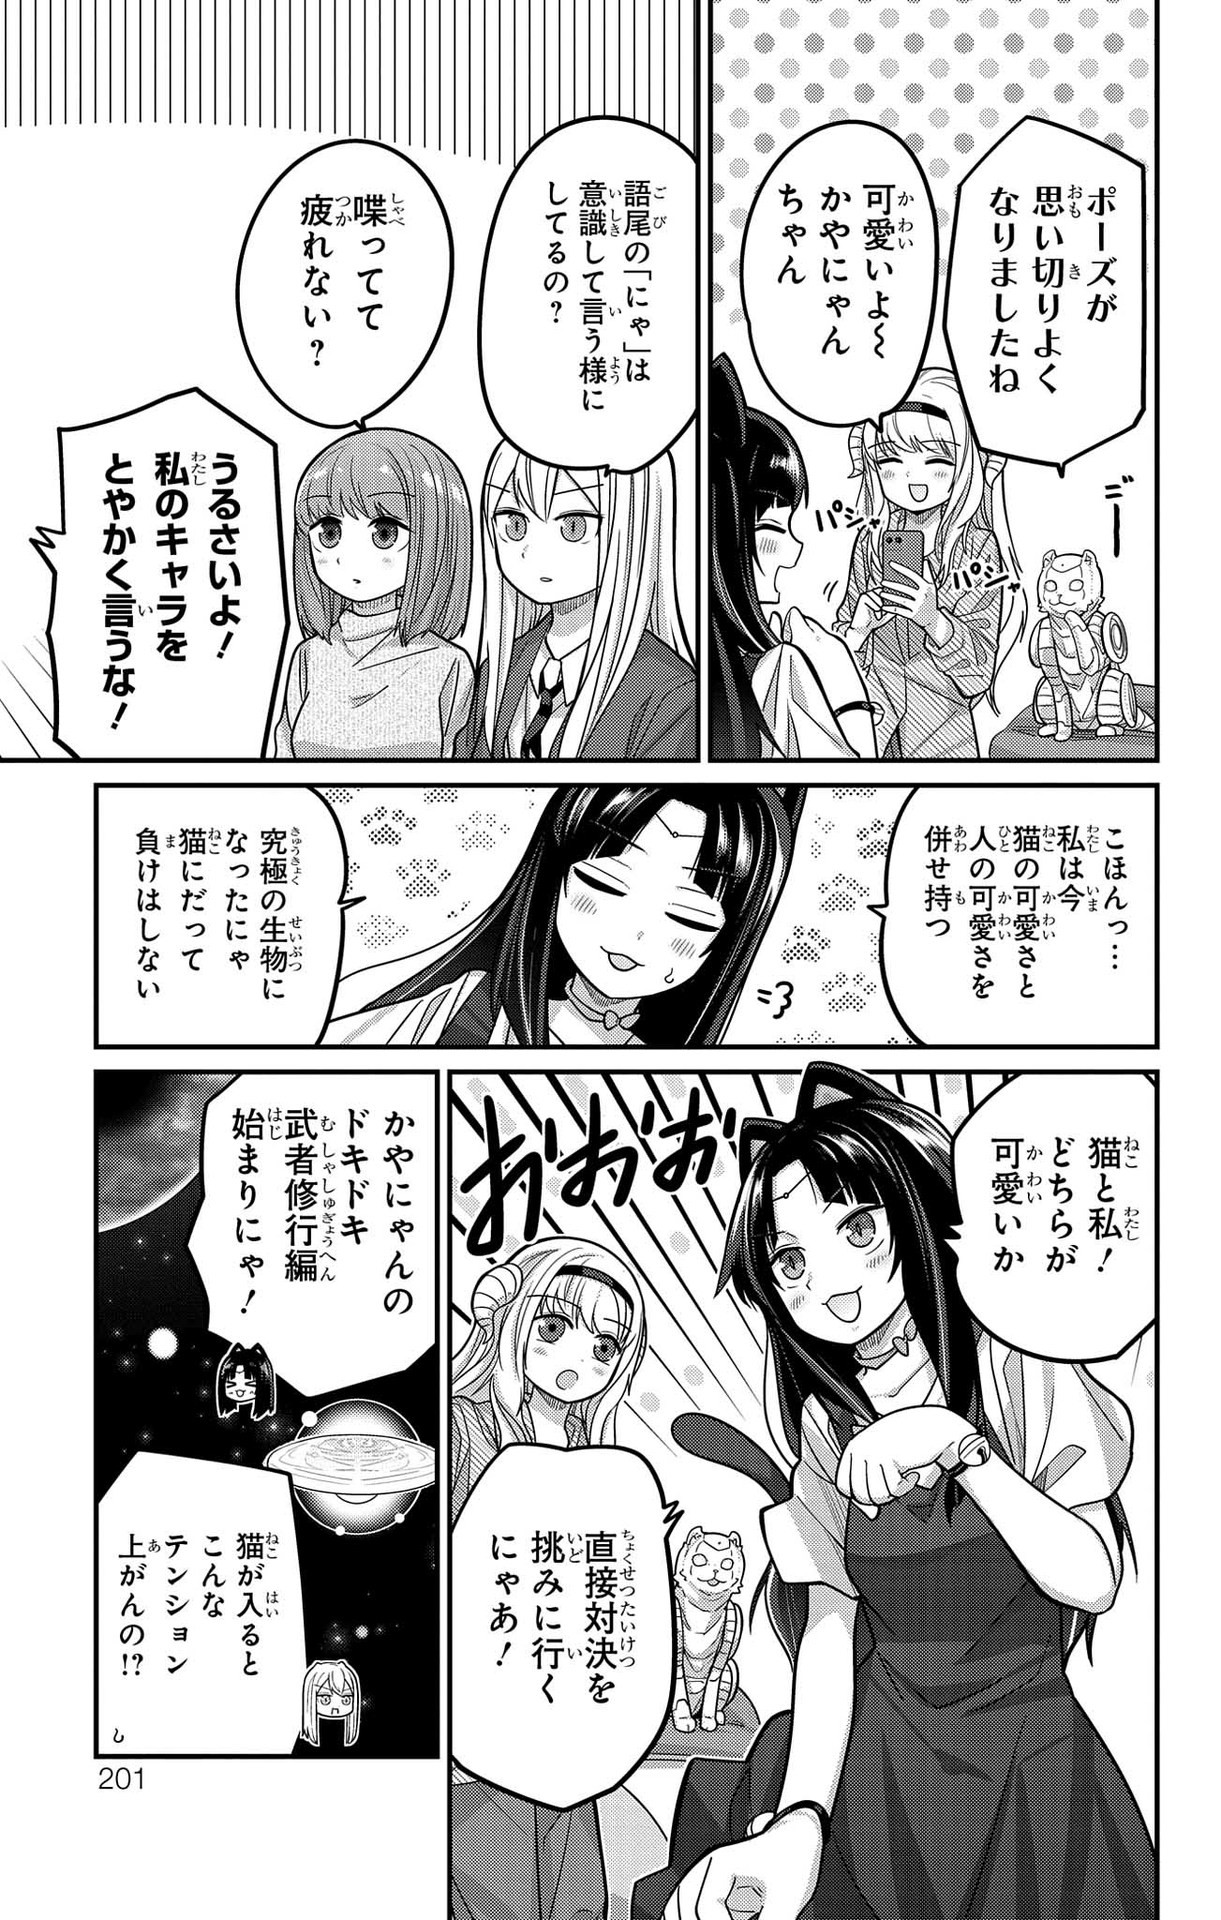 Kawaisugi Crisis - Chapter 96 - Page 11